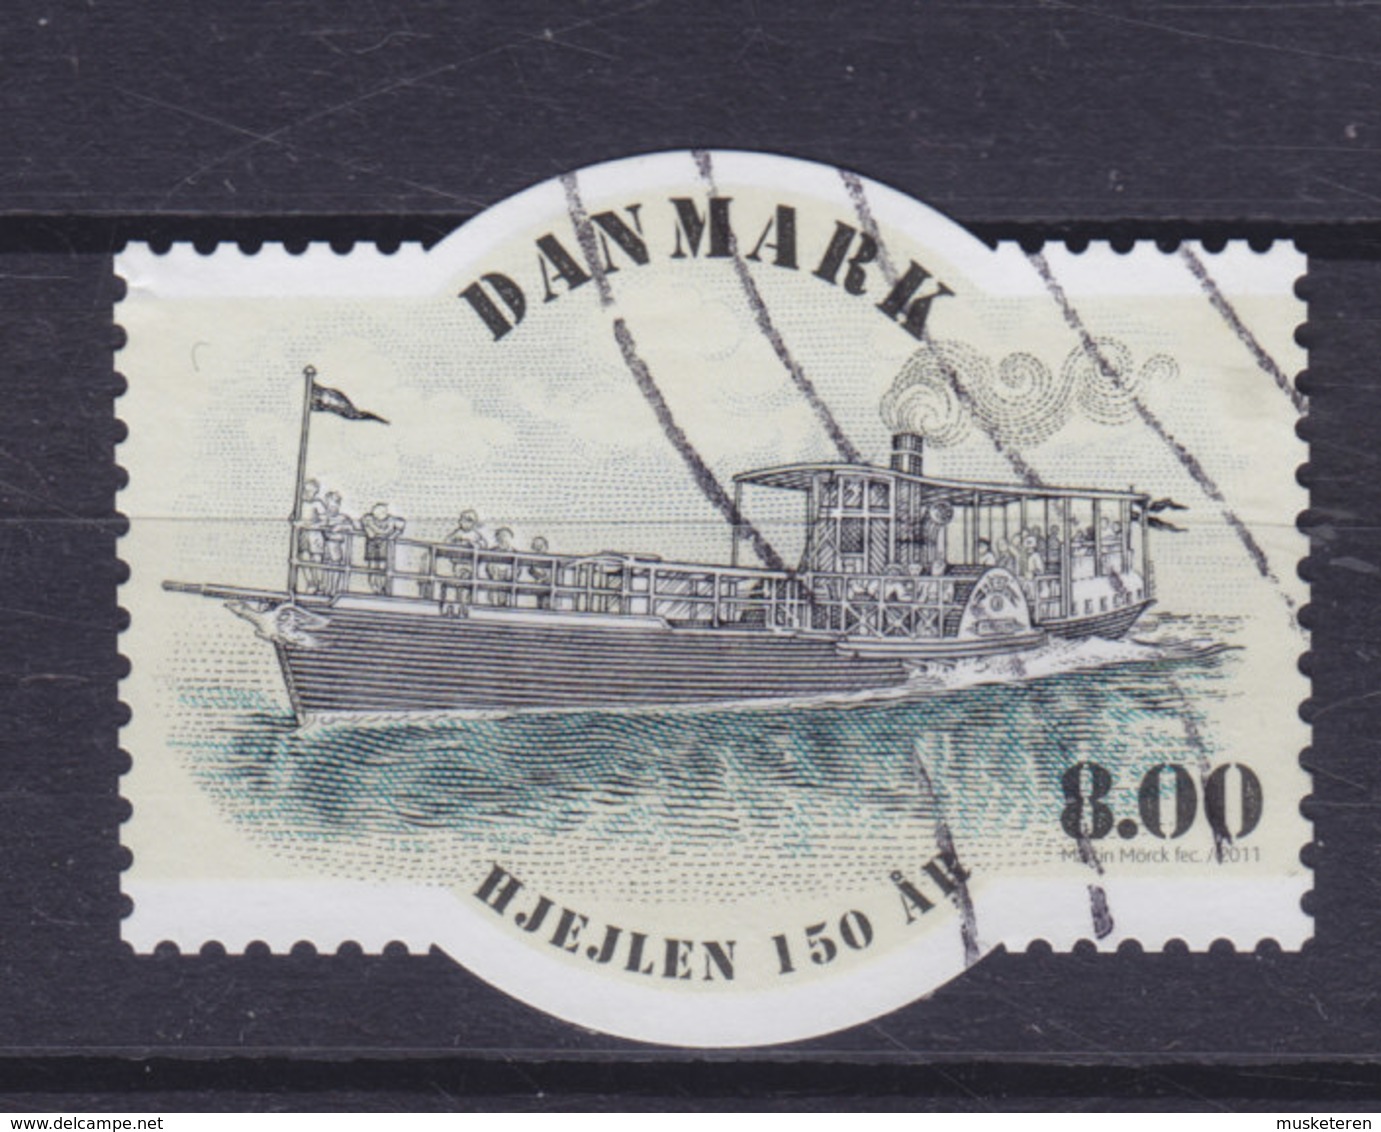 Denmark 2011 Mi. 1660   8.00 Kr. Schiff Ship "Hjejlen" 150 Year Anniversary - Gebraucht